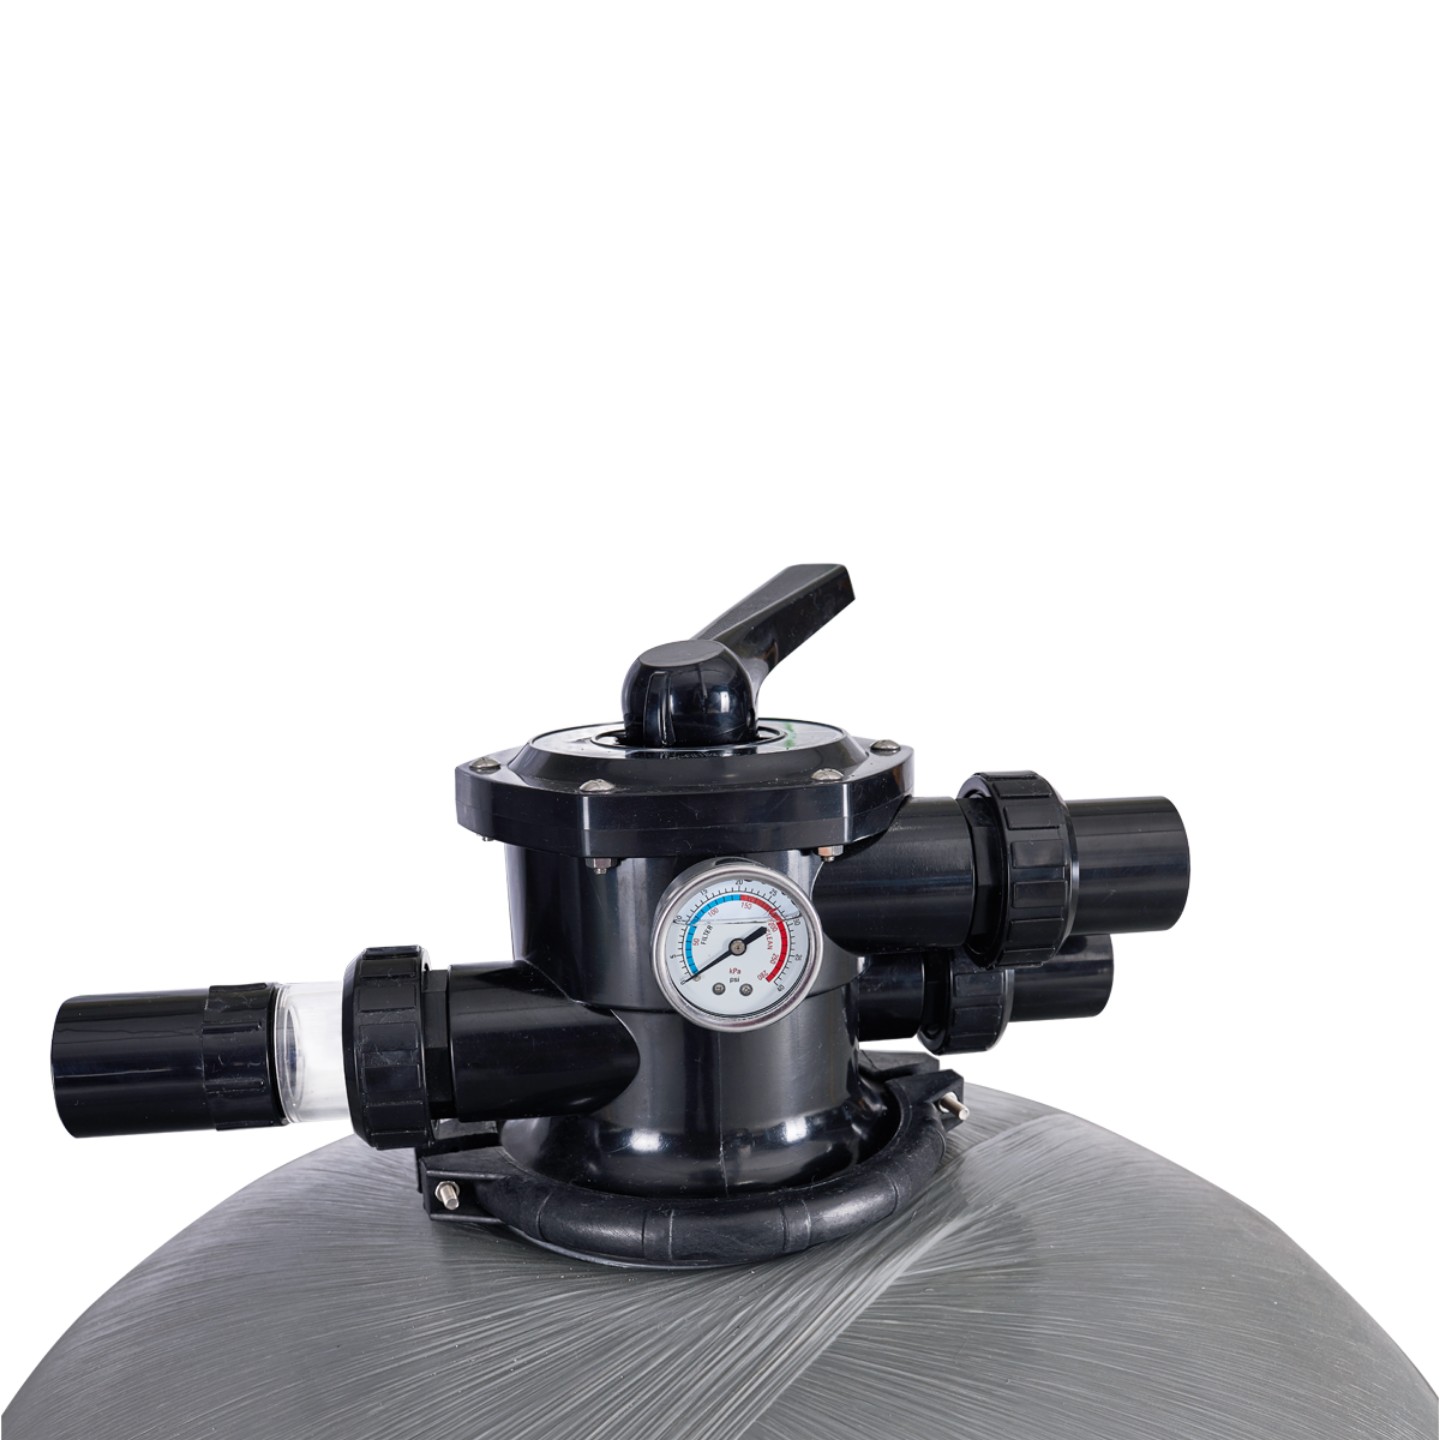 Фильтр AquaViva P36 (31m3/h, 900mm, 470kg, 2" верх)